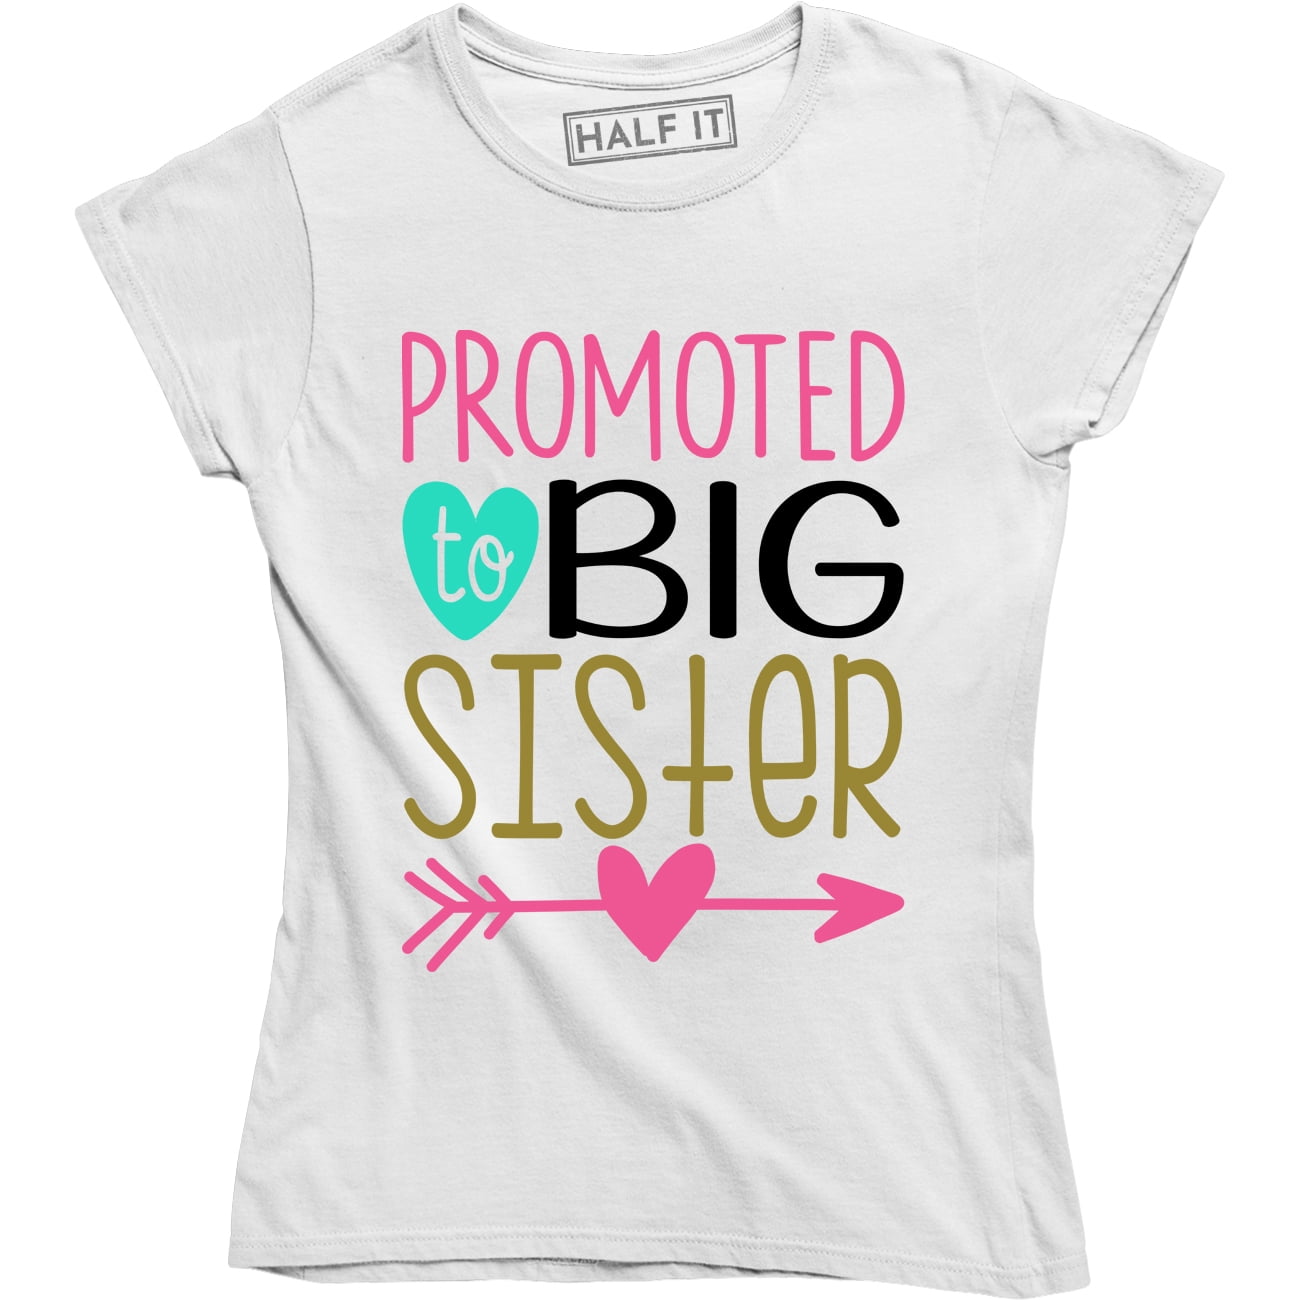 Big Sis T-Shirt Promoted To Big Sister Tee Toddler Girl T-Shirt Big Sister Shirt Pregnancy Announcement Shirt B Is For Big Sister Tee